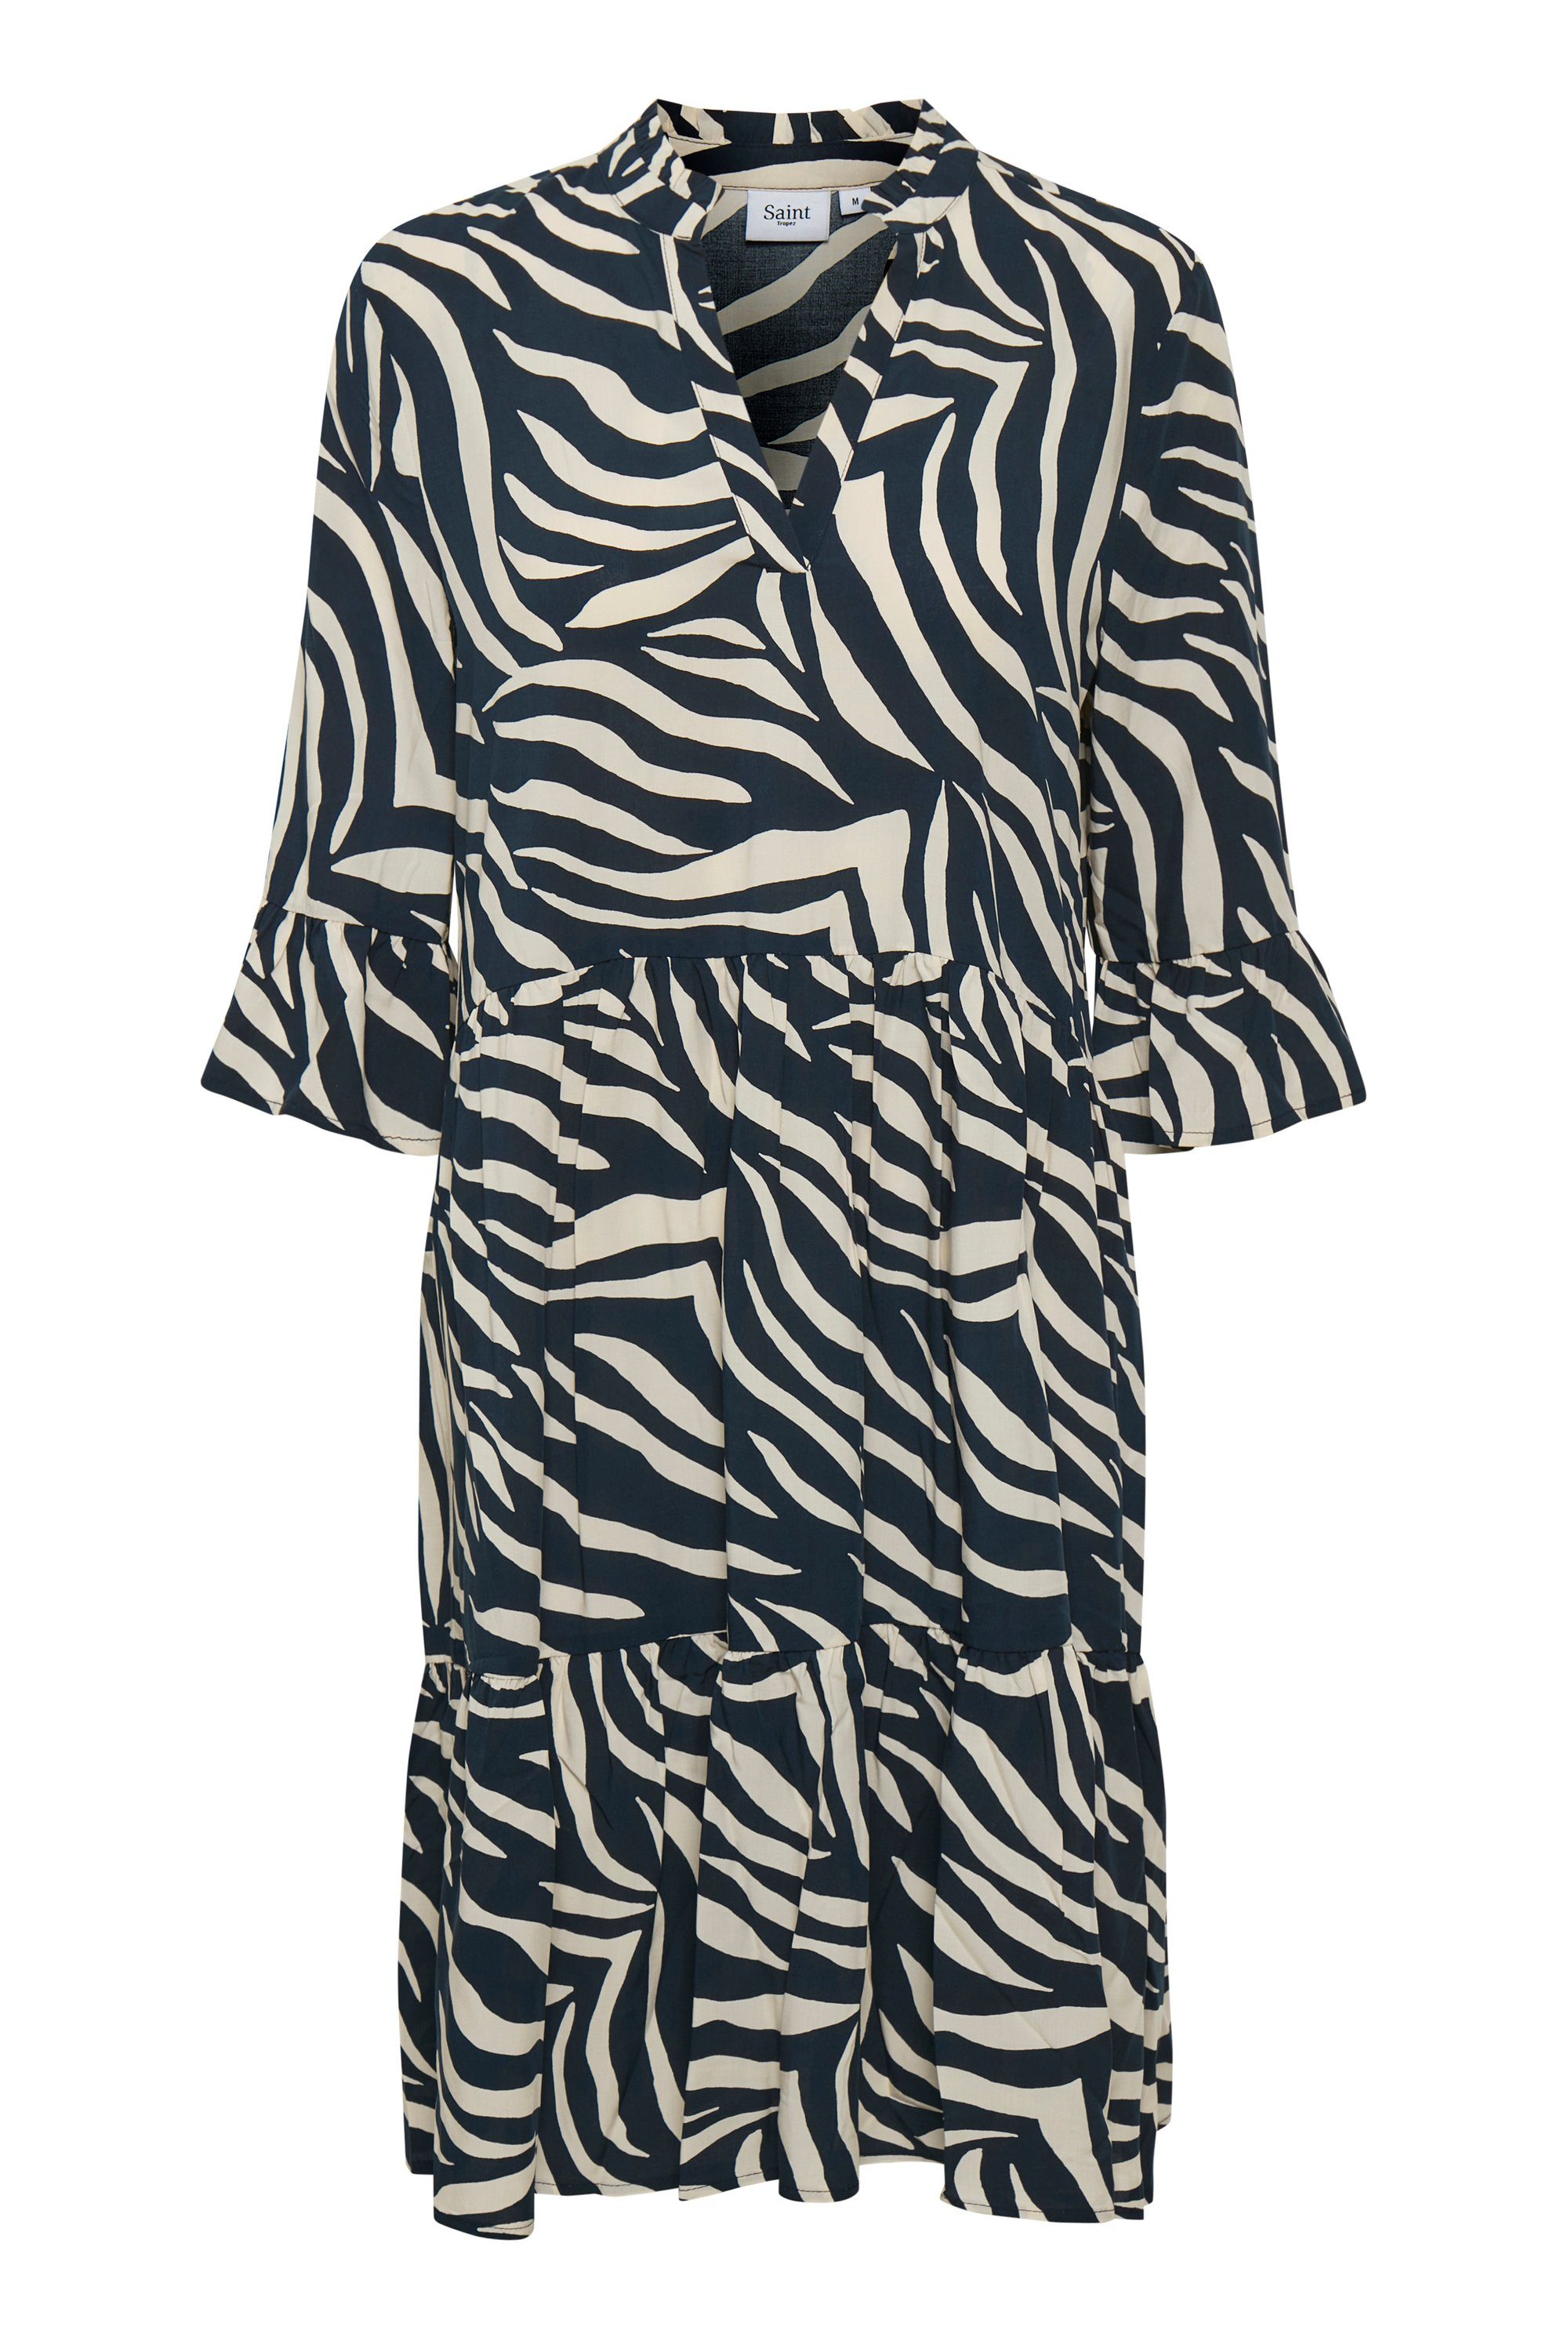 Saint Total Dress Eclipse Zebra EdaSZ Jerseykleid Skin Tropez